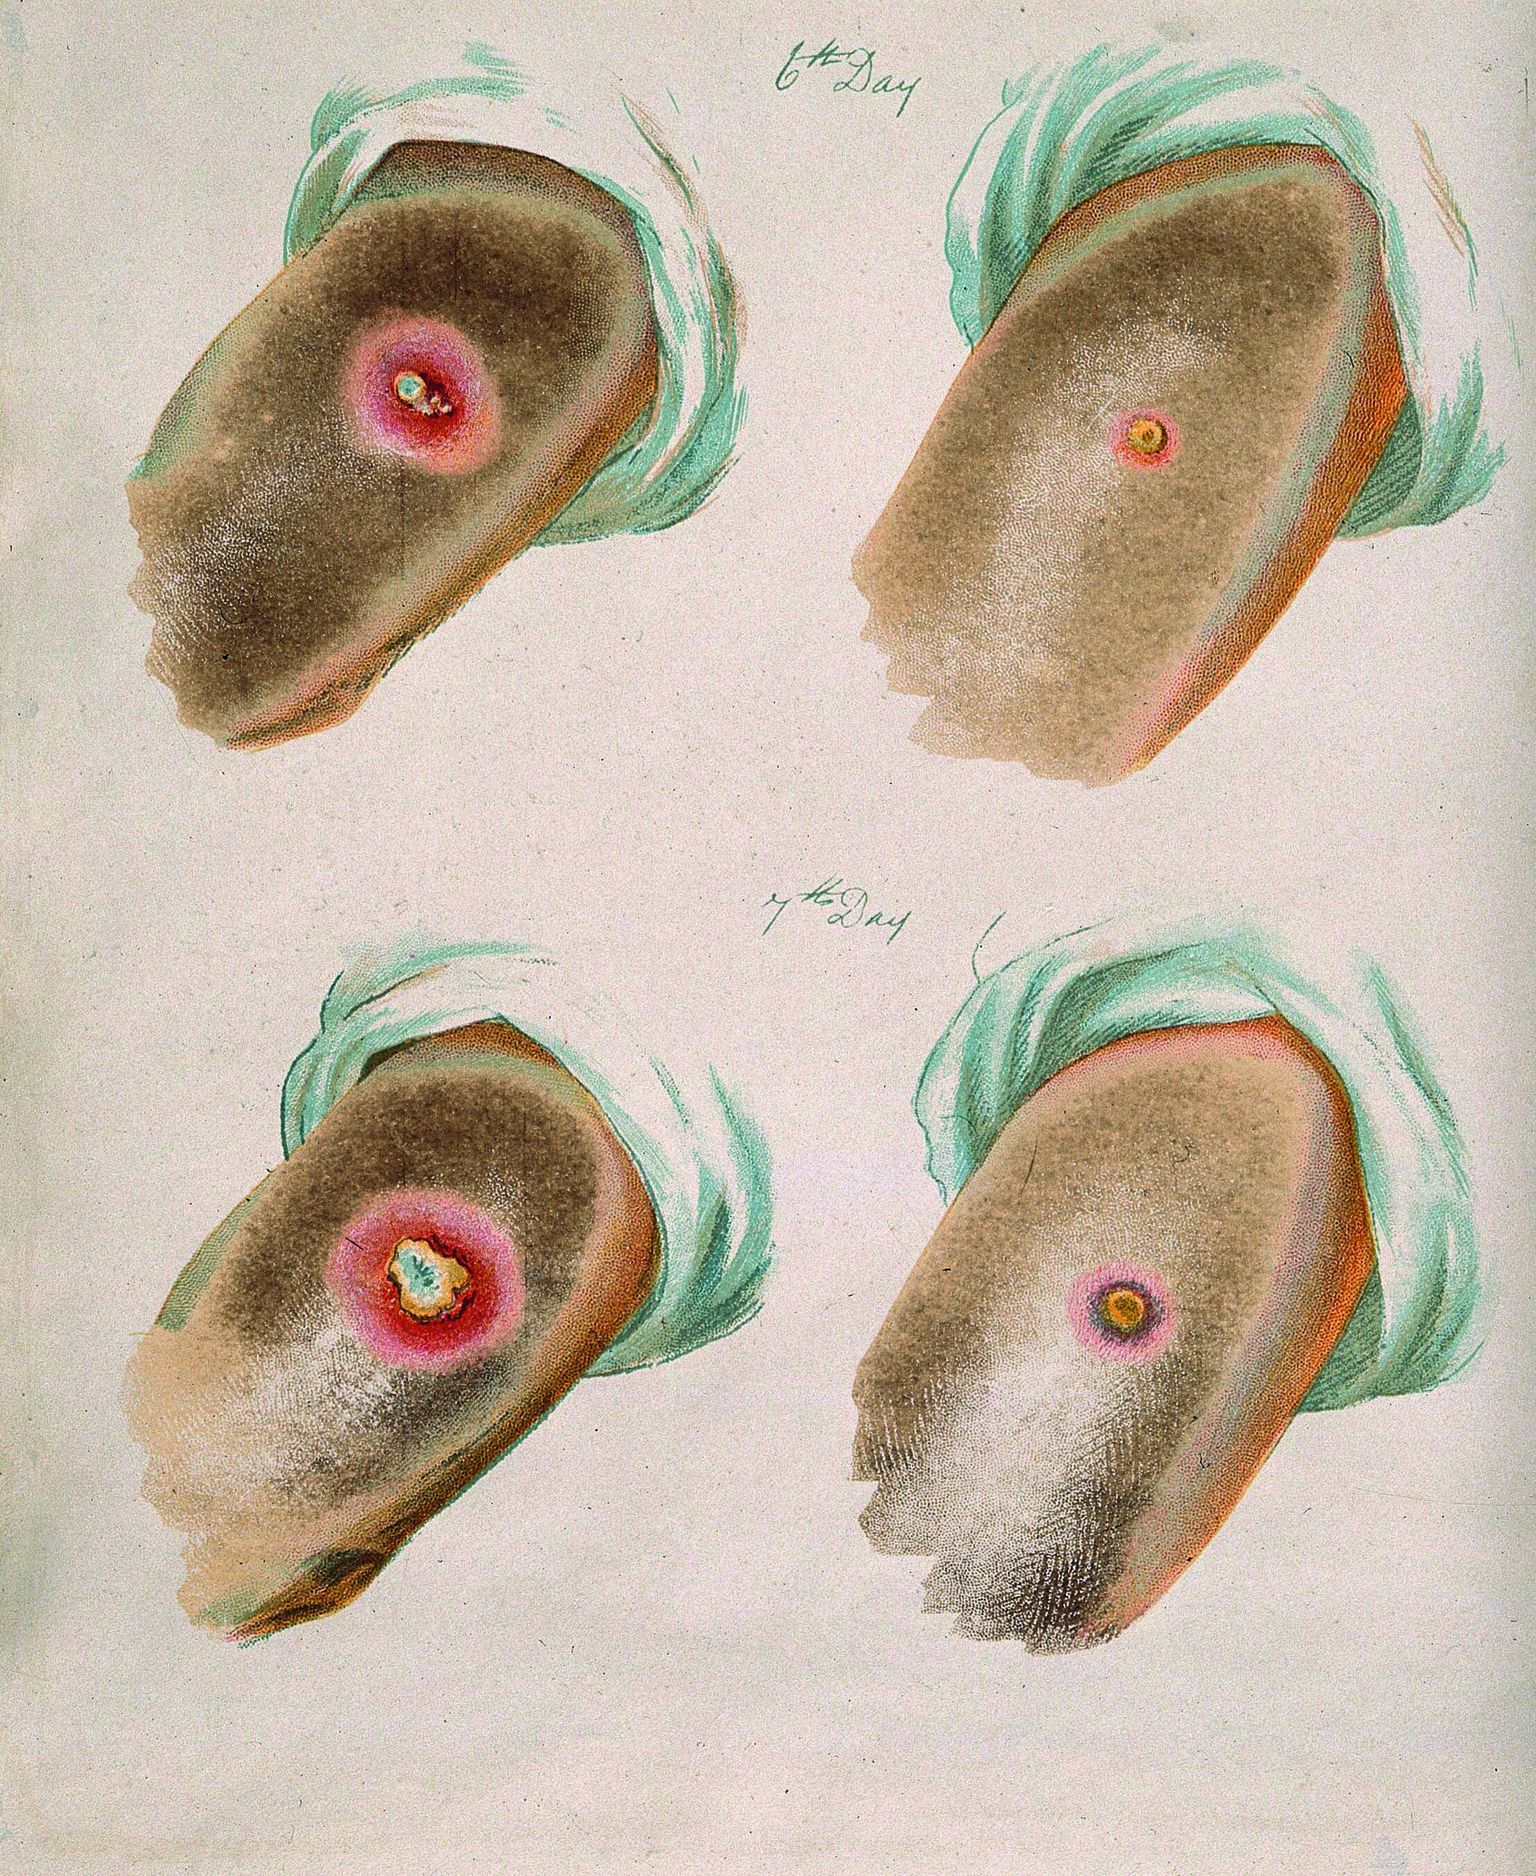 Rõugete (vasakul) ja veiserõugete villid 6. ja 7. päeval pärast haigestumist (G. Kirtland, 1896). Veiserõuged kulgevad inimesel väga kergelt.